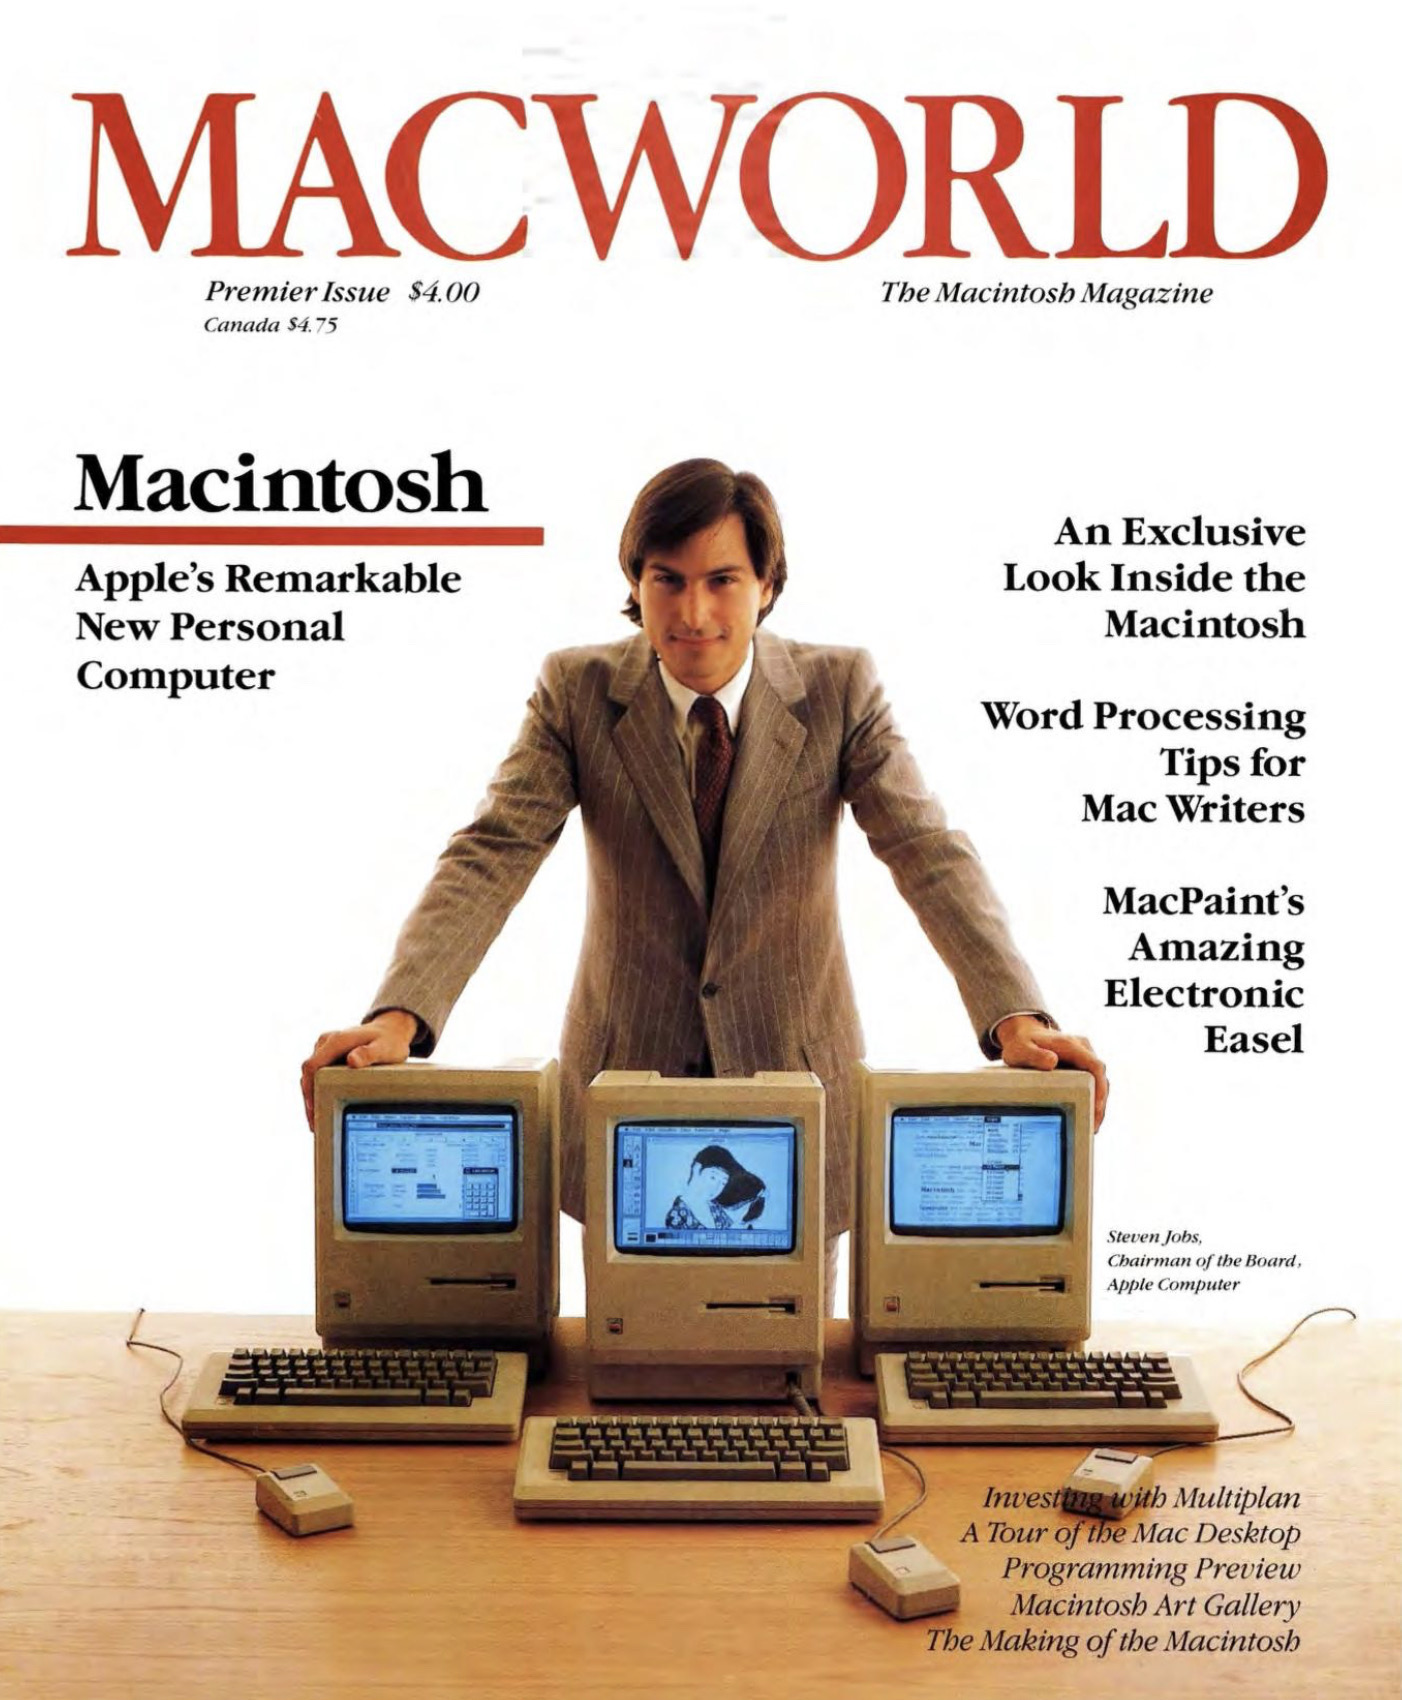 Macworld cover